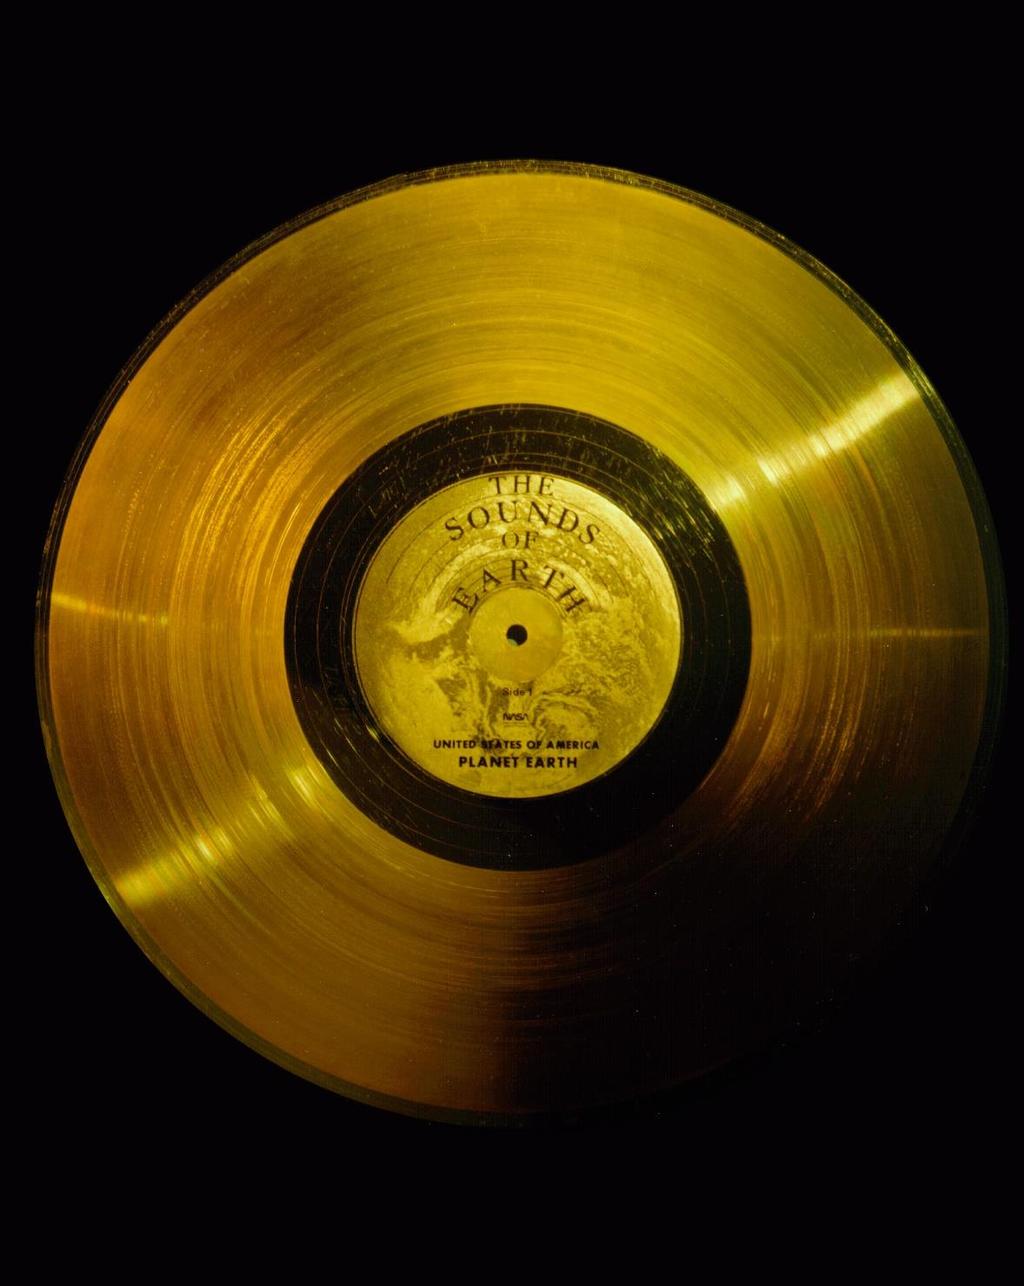 La sonda Voyager 1 A bordo della sonda è stato messo un disco d oro che contiene suoni della natura, musiche e immagini provenienti dalla Terra, come una sorta di messaggio in bottiglia.